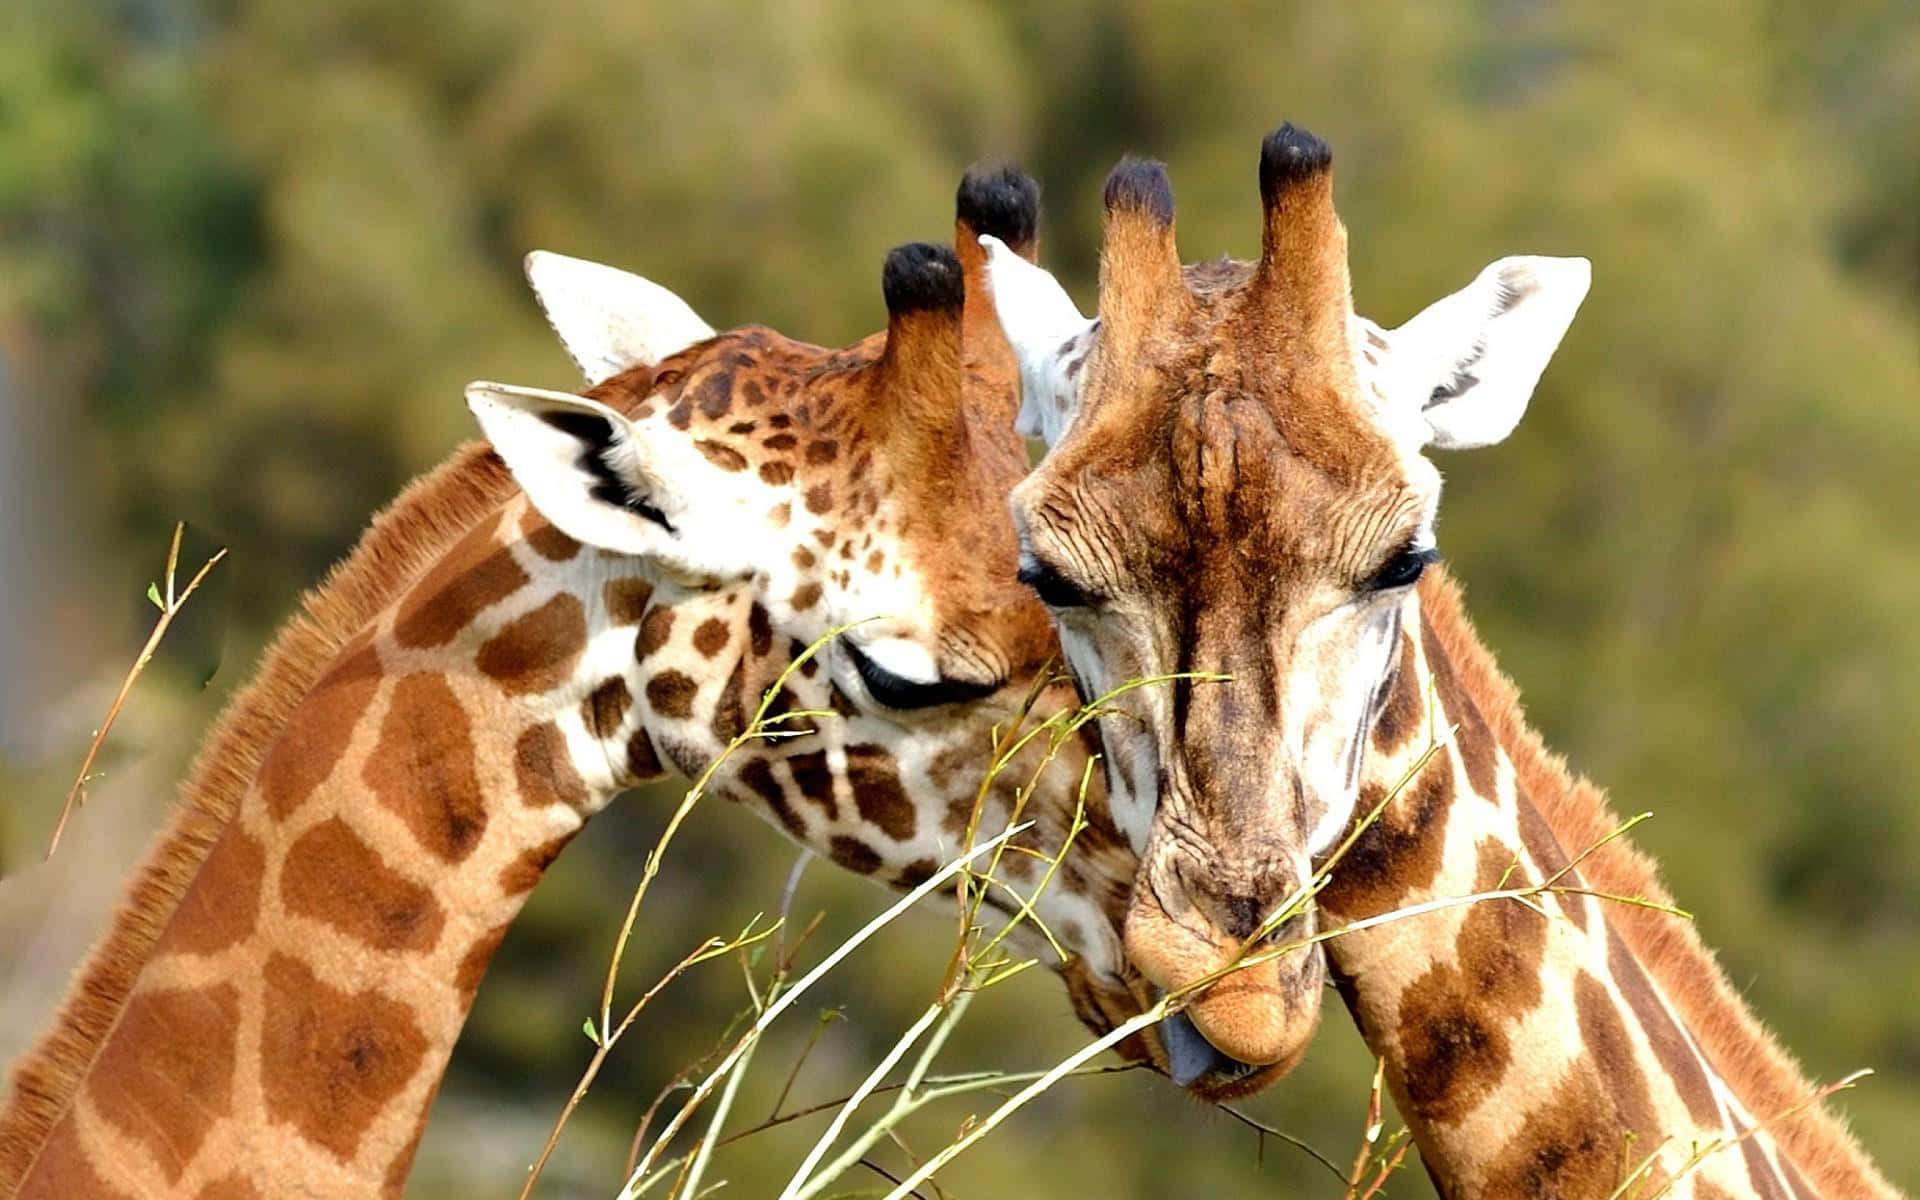 Adorable baby giraffe exploring its new environment.